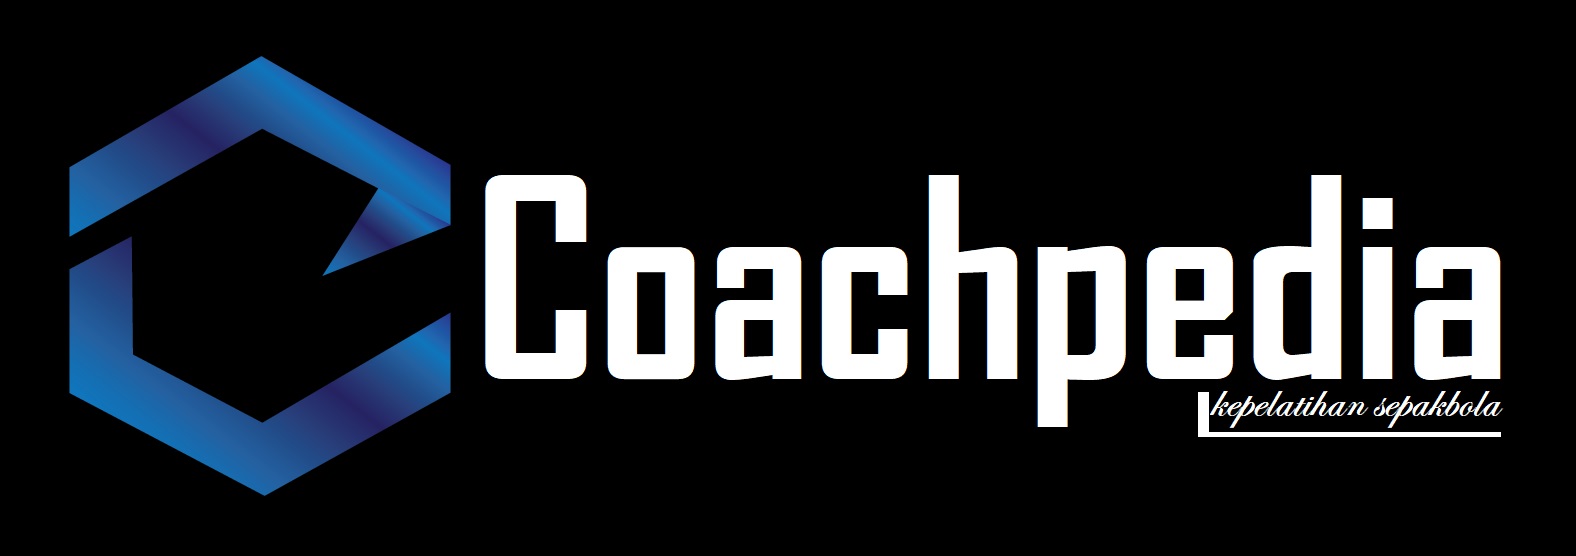 Coachpedia